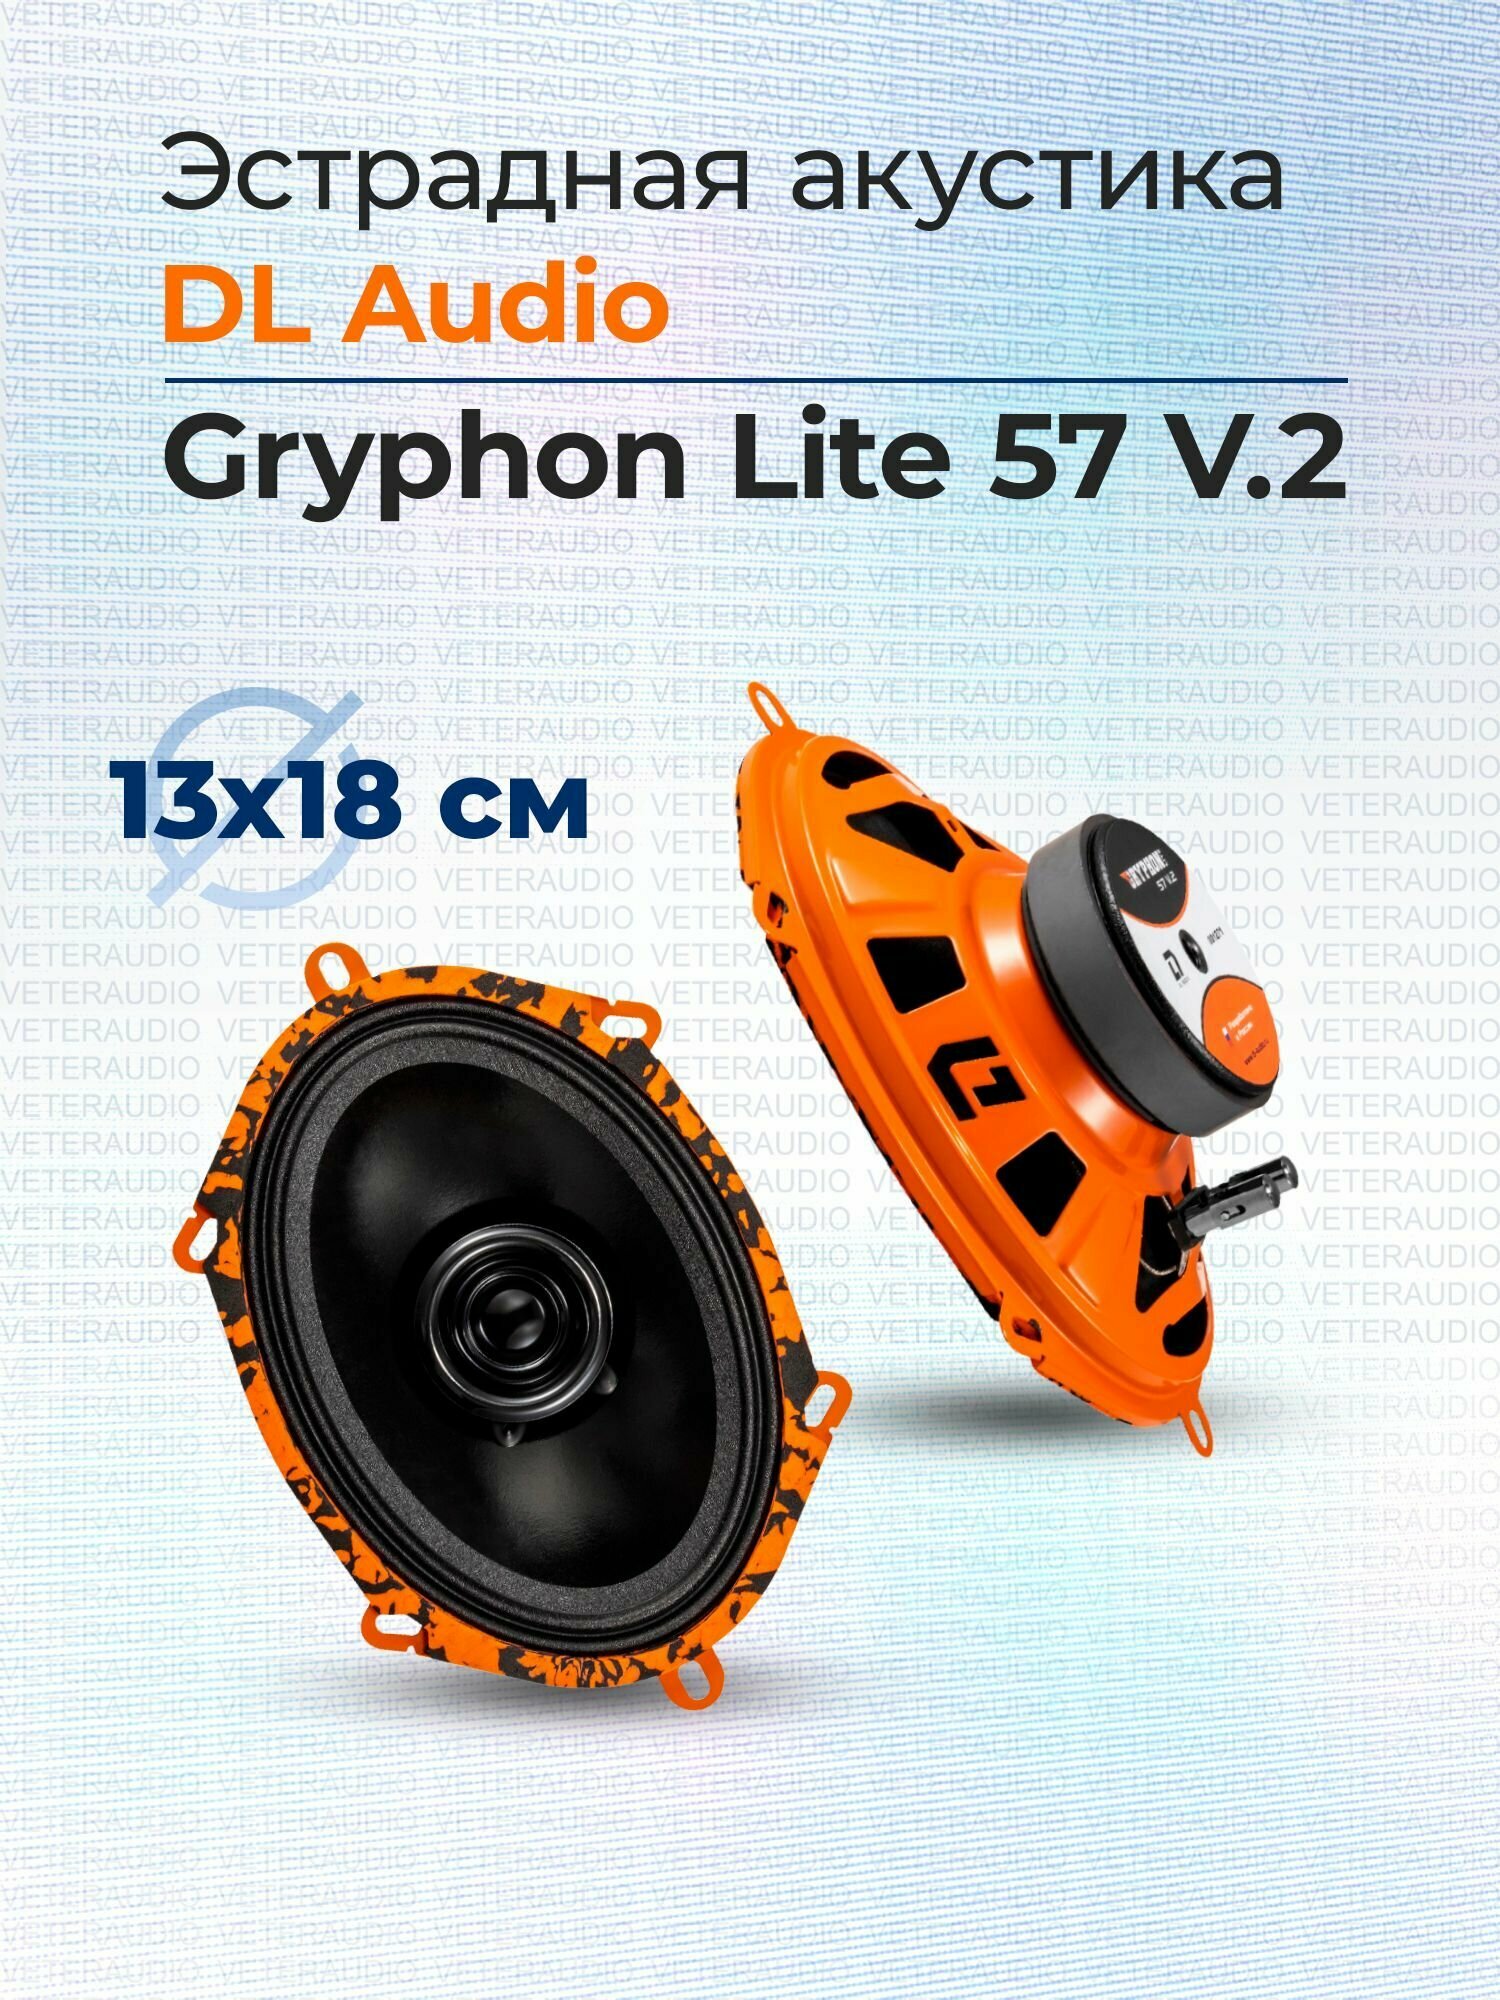 Эстрадная акустика DL Audio Gryphon Lite 57 V.2